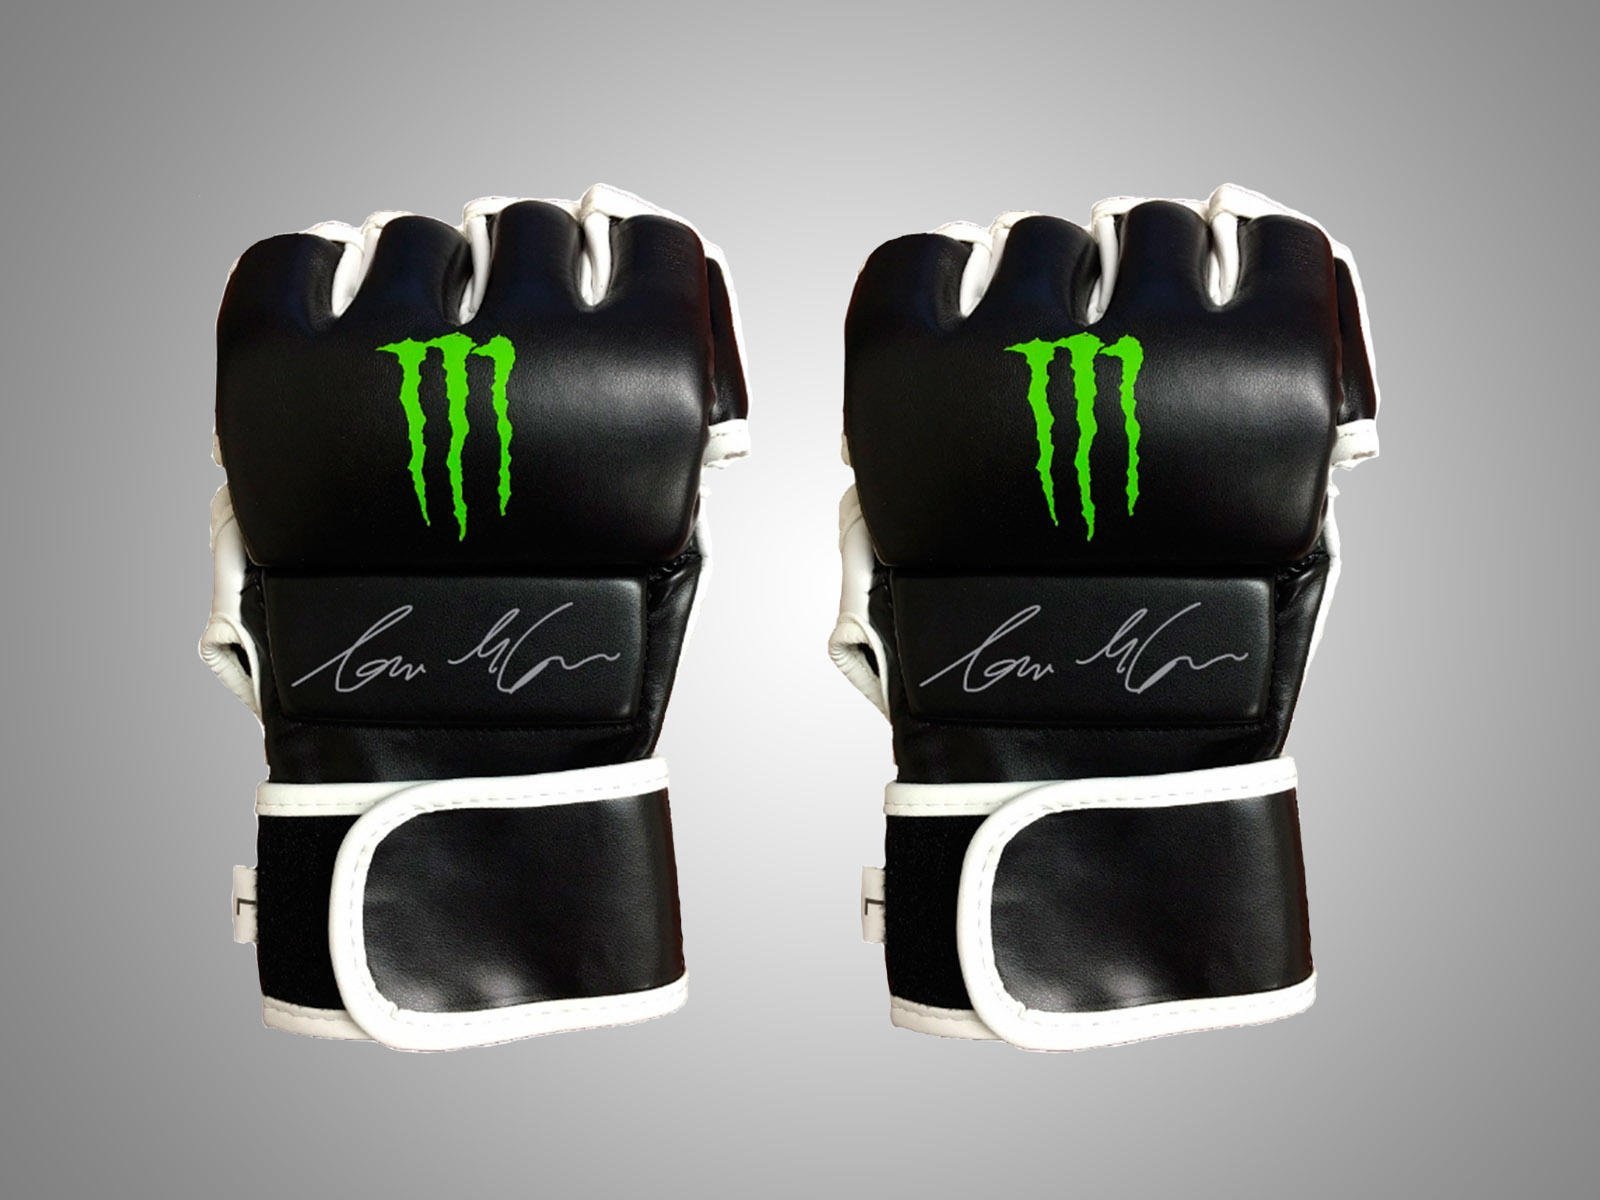 Kirkestol Læs ihærdige Vind et par MMA-handsker fra Monster Energy med Conor McGregors autograf |  Magasinet M!